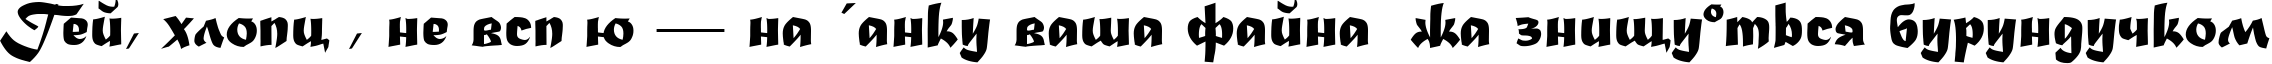 Пример написания шрифтом Madera текста на украинском